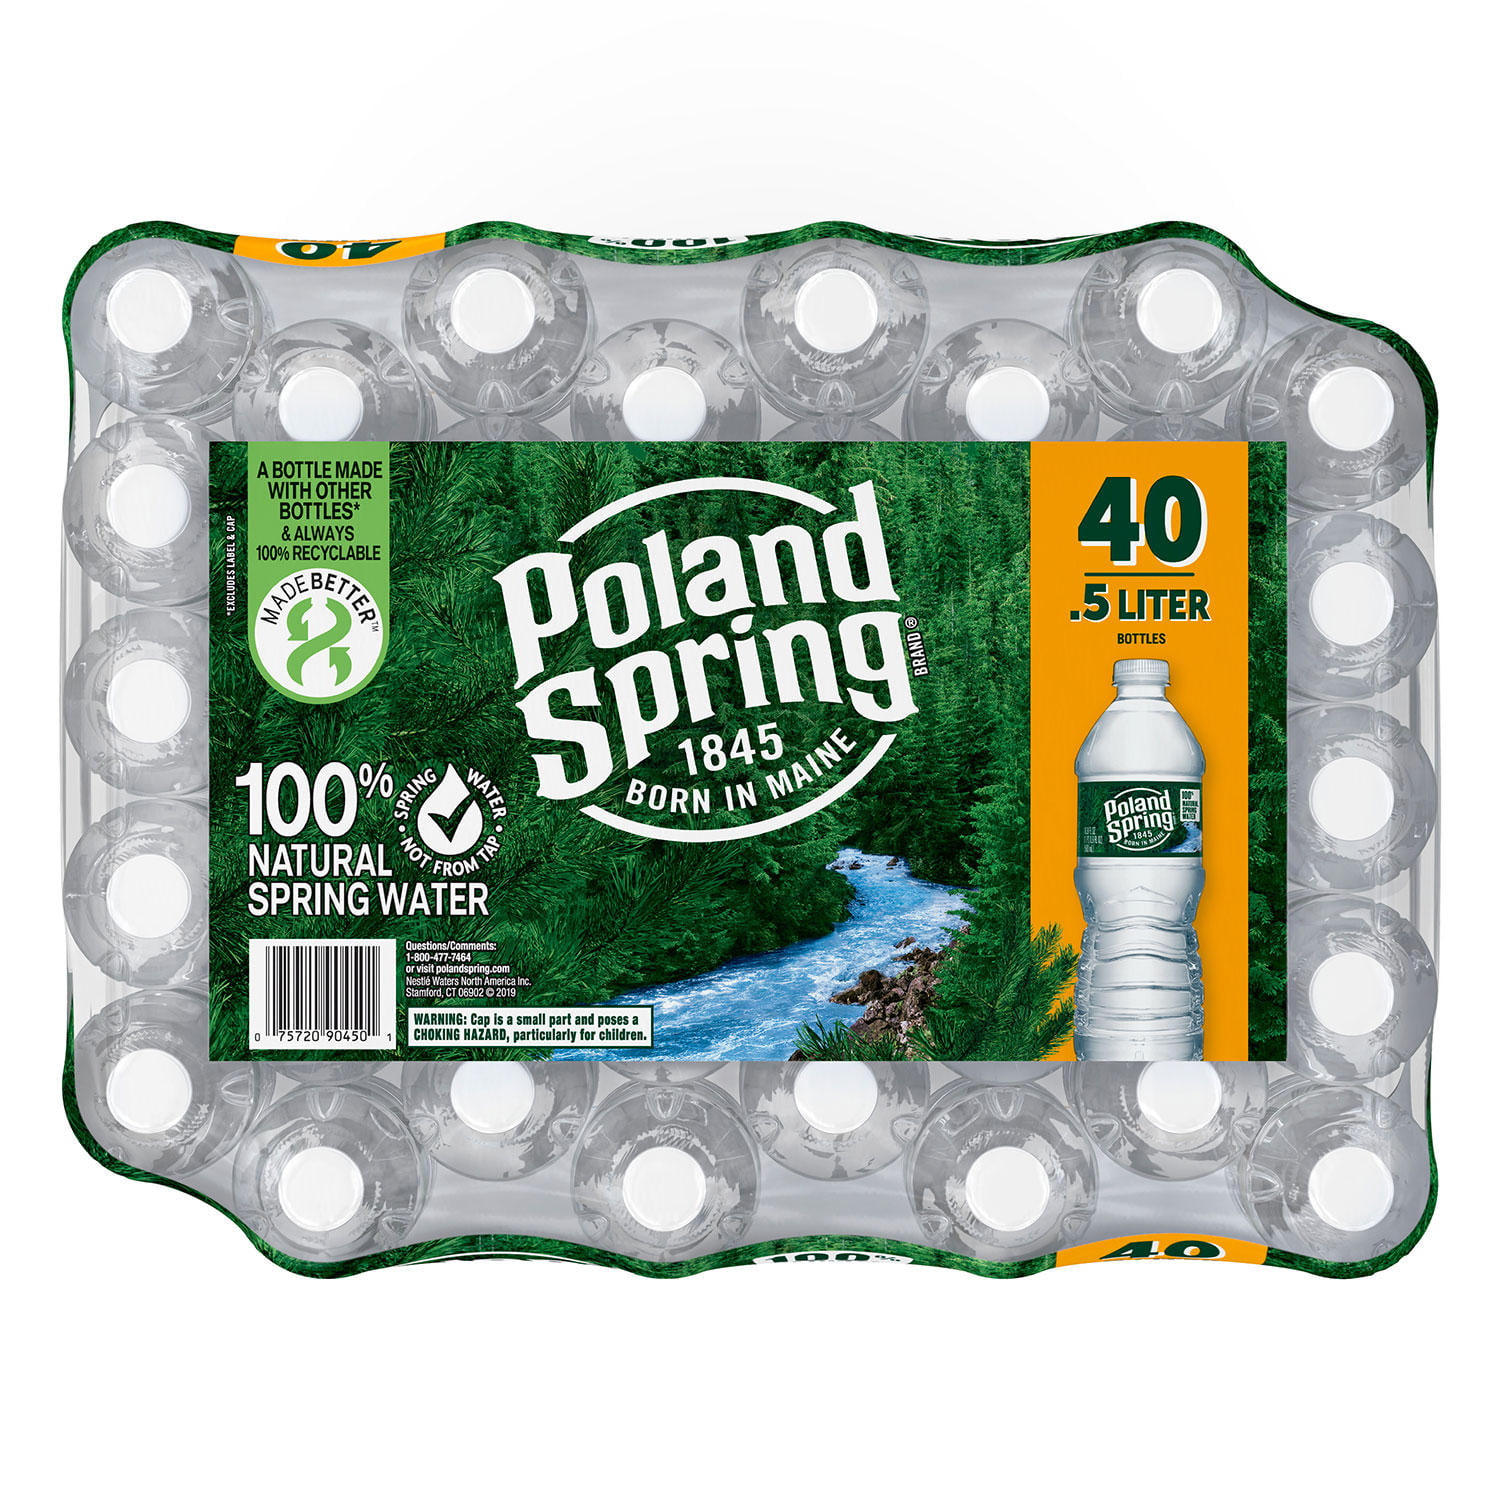 Poland Spring 100% Natural Spring Water, 16.9 Fl Oz, 40 Count Bottles